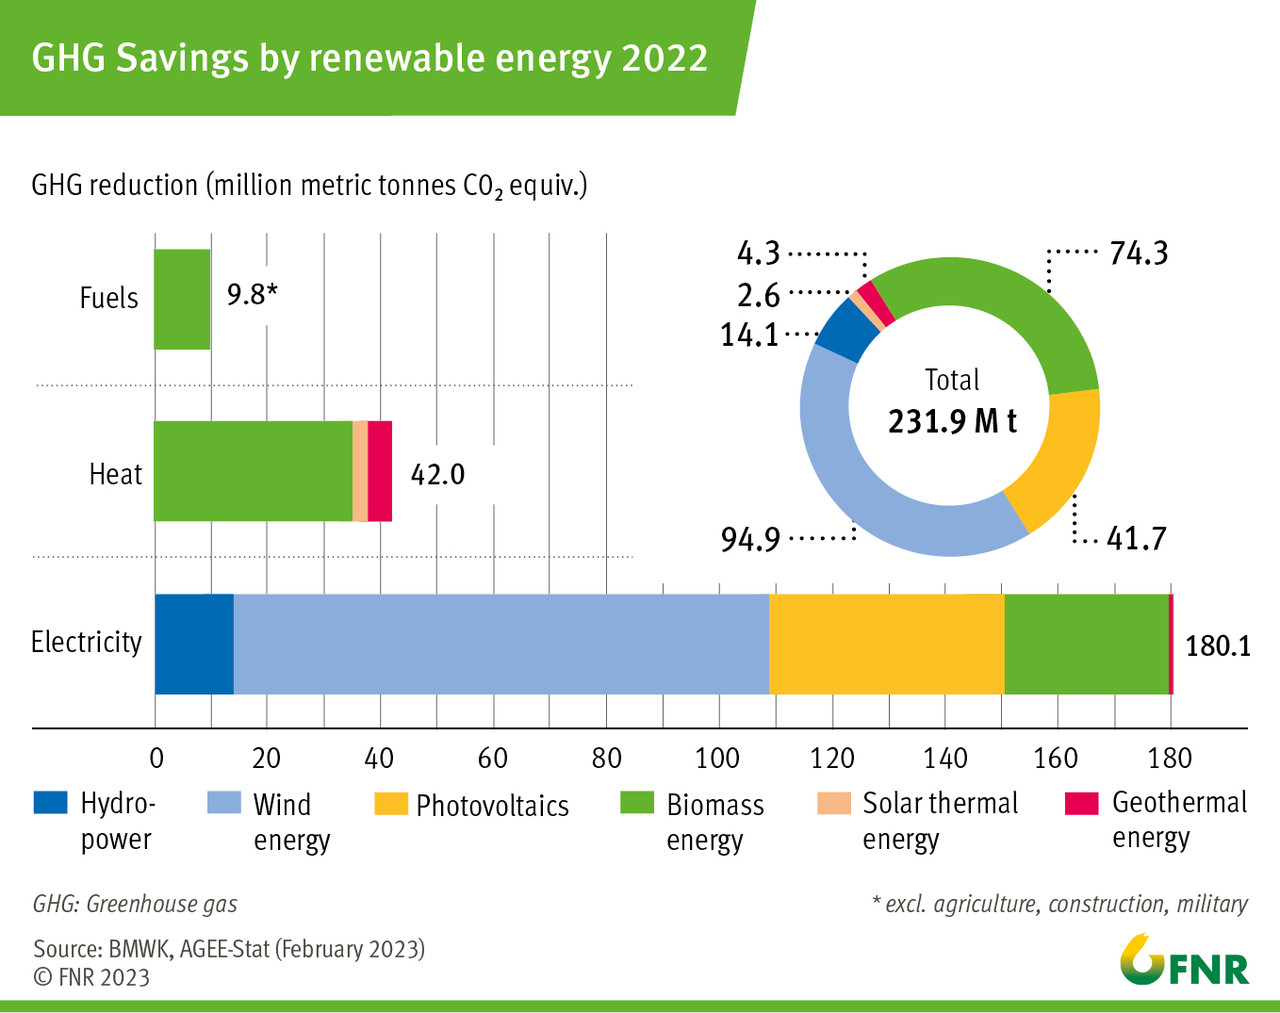 GHG savings by renewable energy 2022